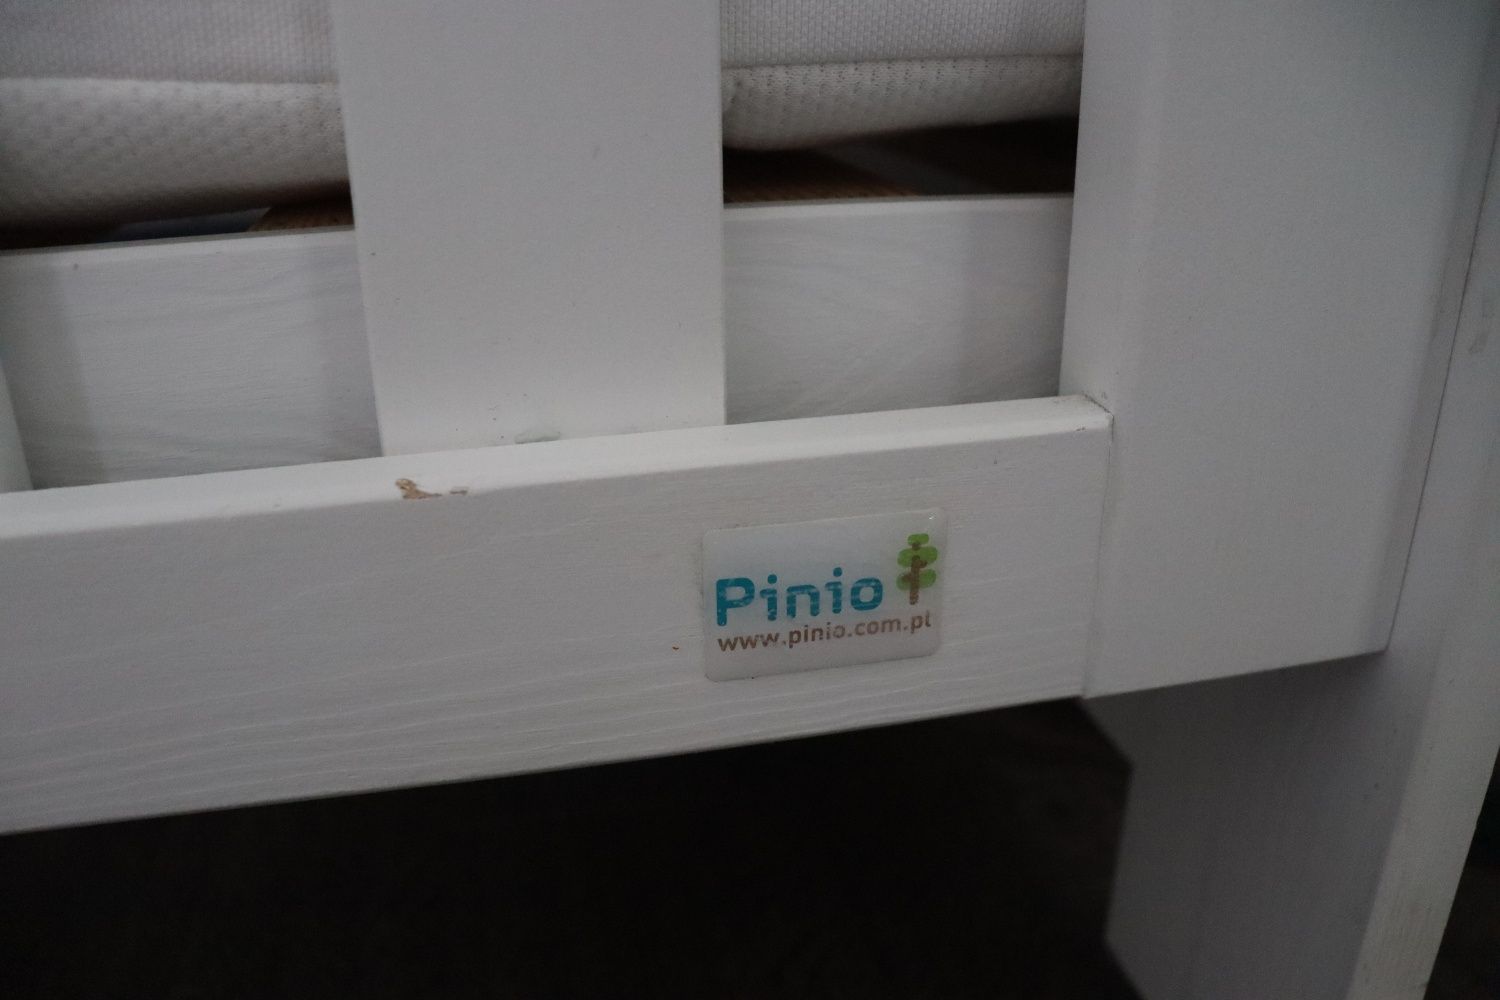 Łóżeczko dla dziecka 120x60 z litego drewna Pinio